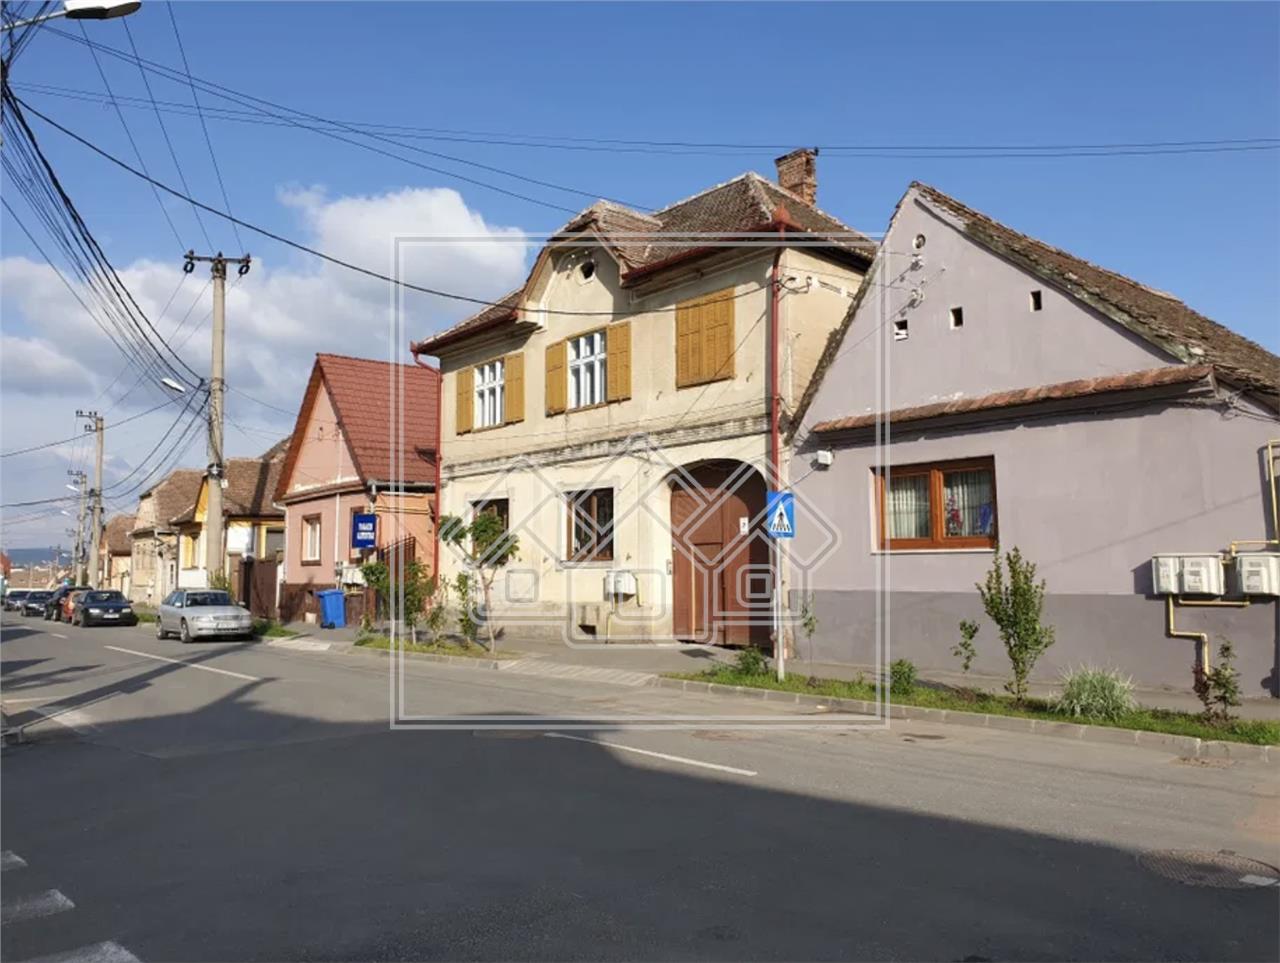 Wohnung zu verkaufen in Sibiu -im Haus -132m?, Grdstck 674m? -Turnisor